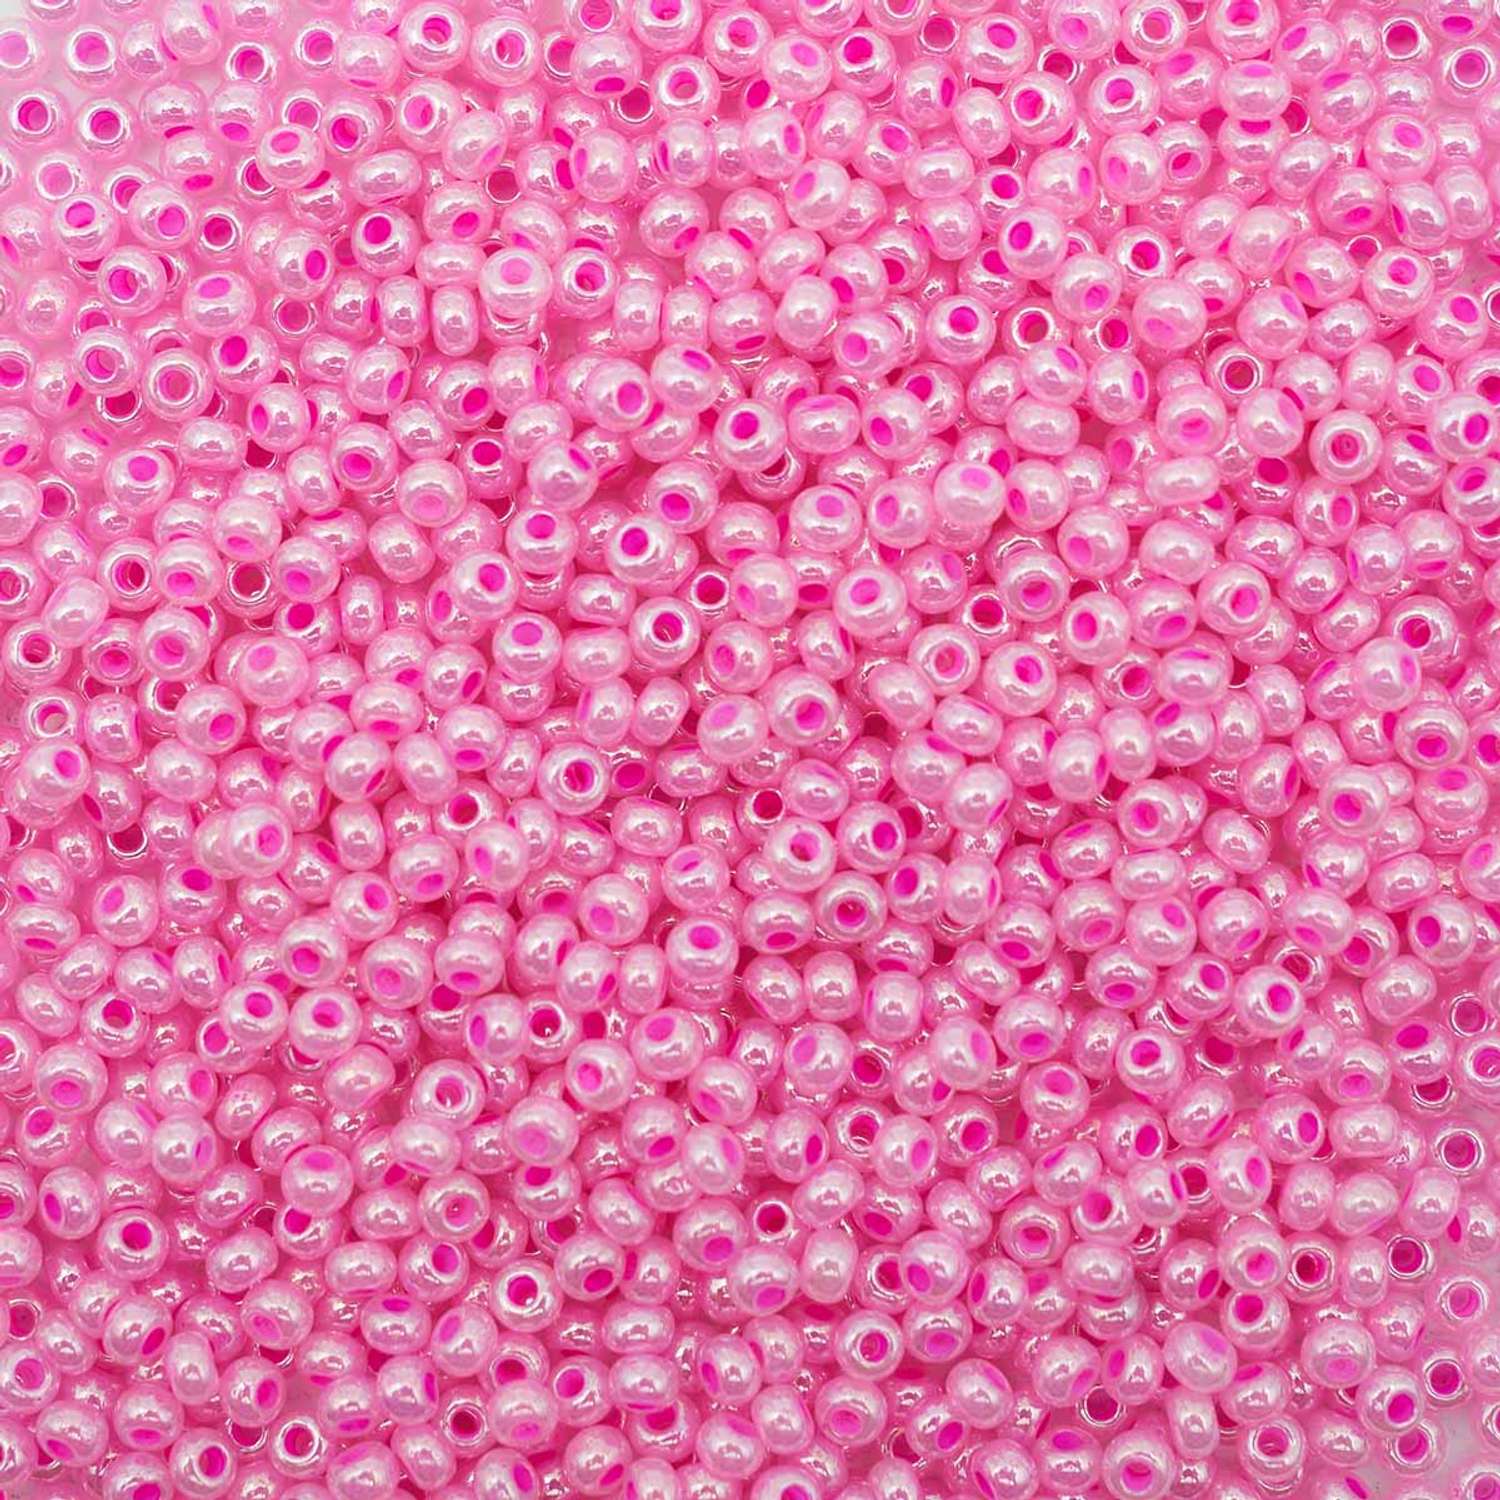 Бисер Preciosa чешский полупрозрачный жемчужный цветной центр 10/0 50 г Прециоза 37177 розовый - фото 1